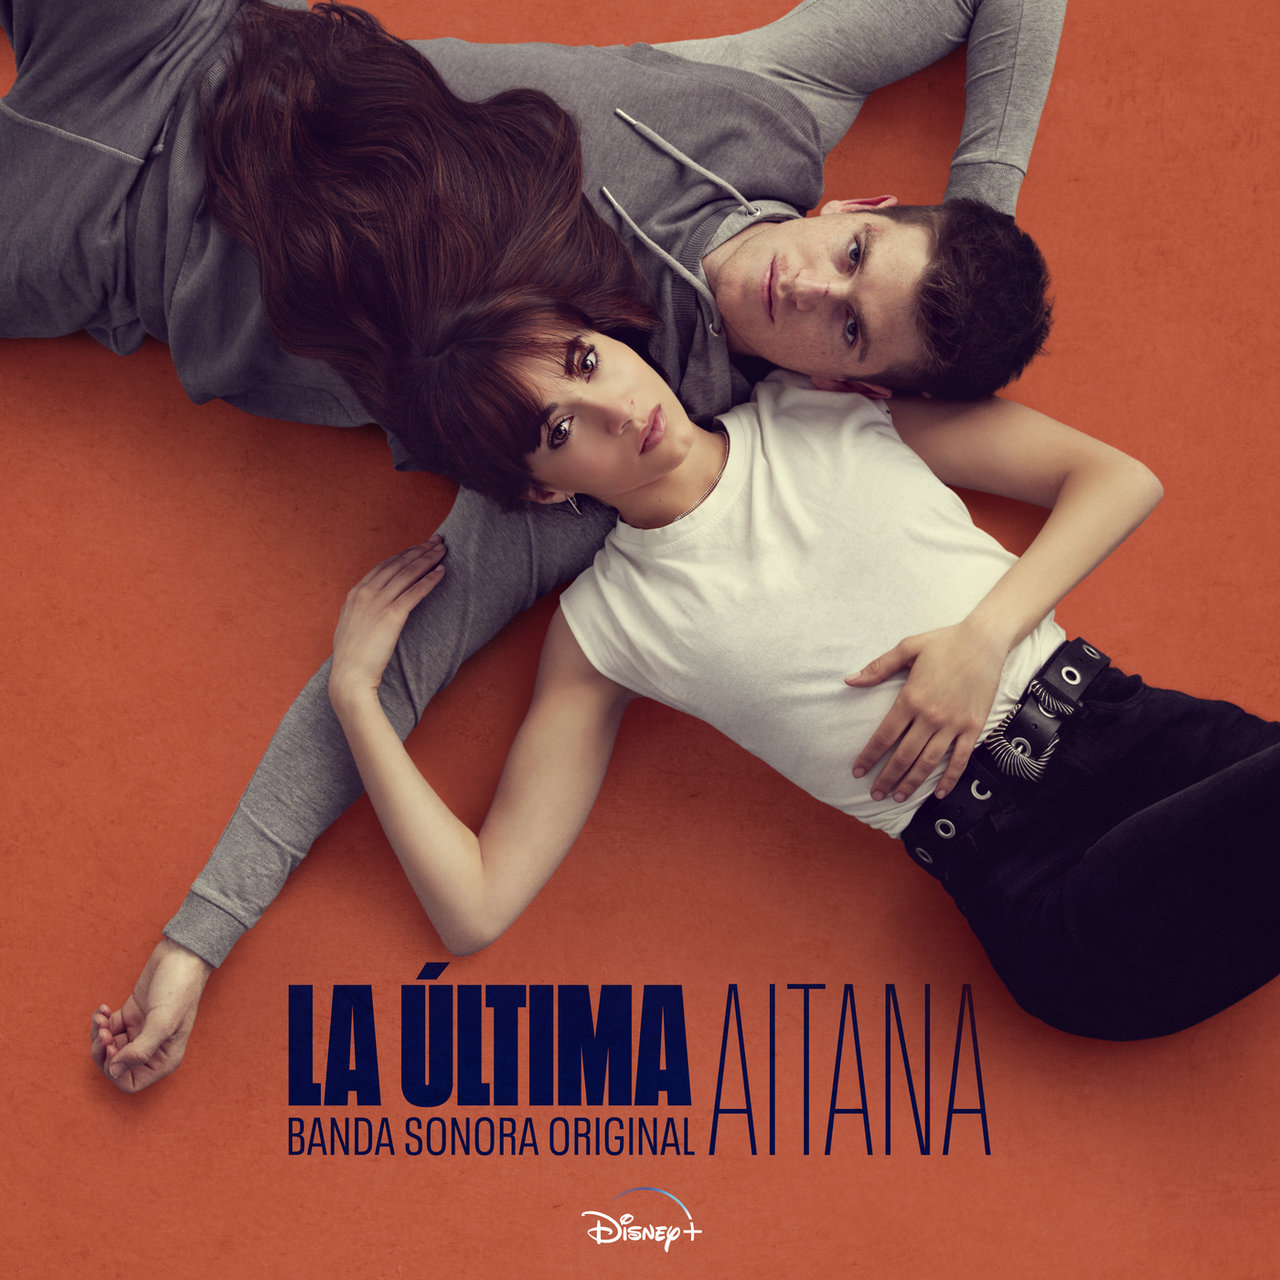 Aitana — Me levanté cover artwork